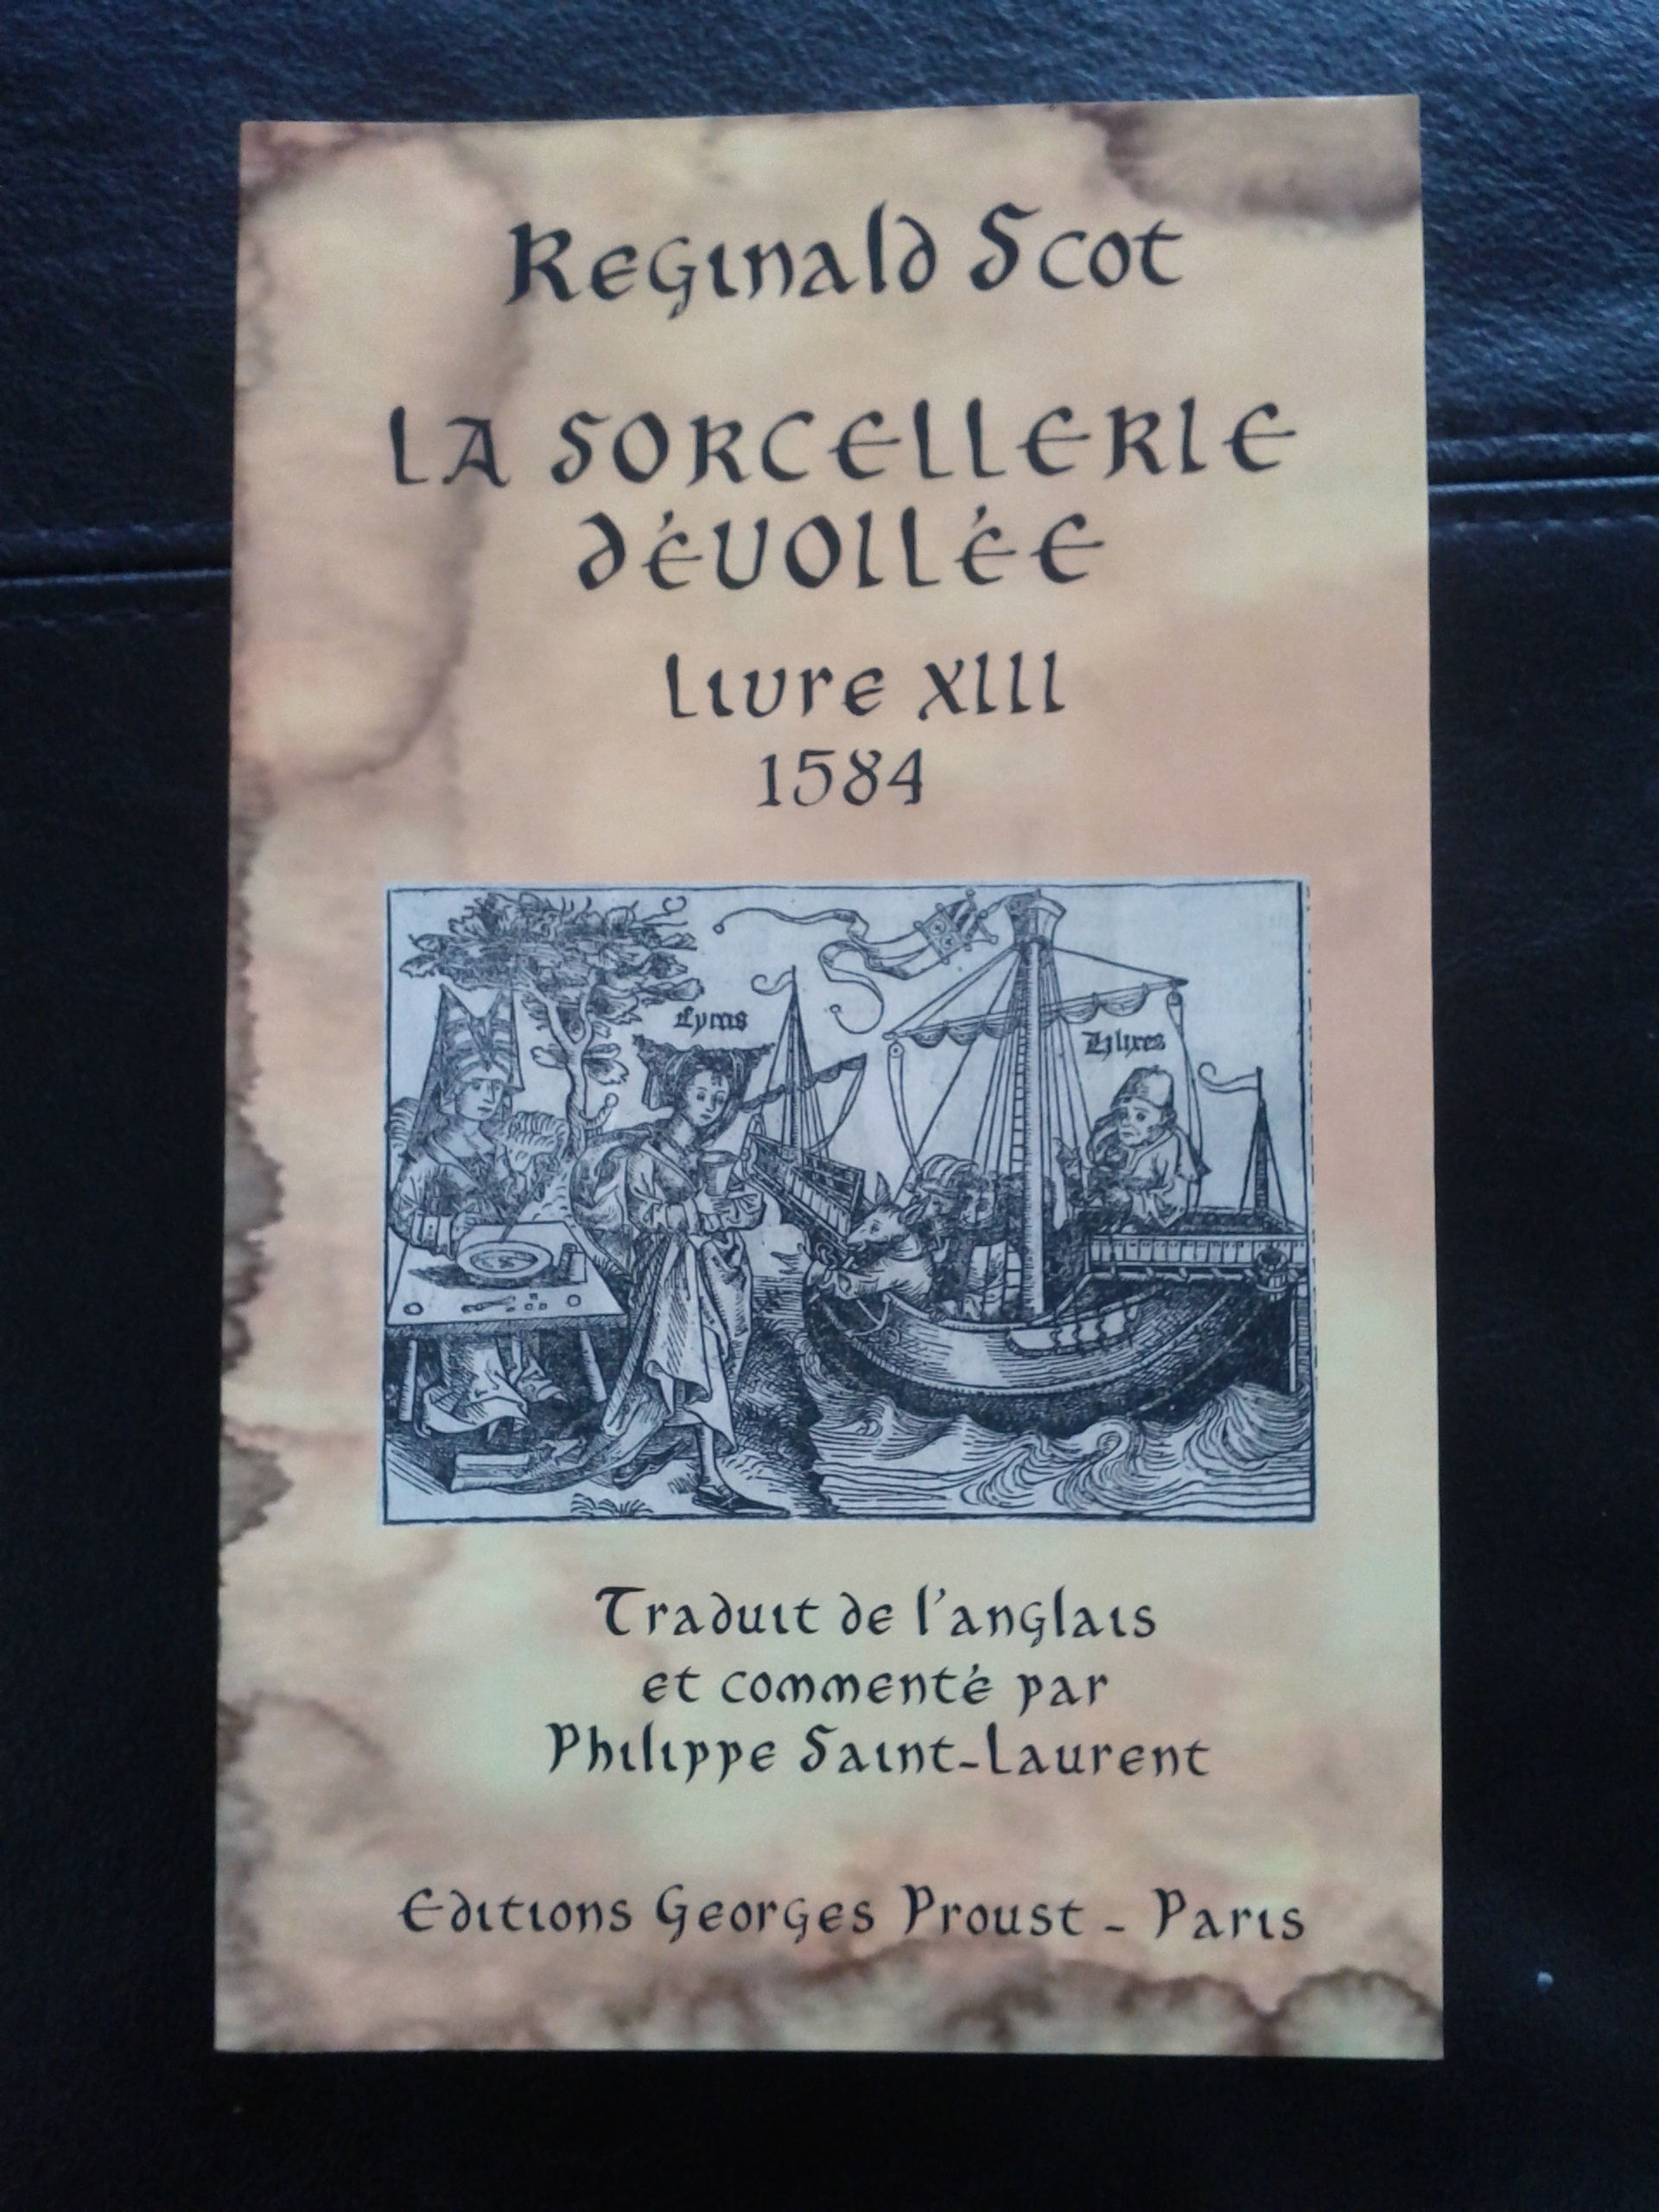 Reginald Scot La Sorcellerie devoillee traduit par Philippe Saint_Laurent 2011 no 2